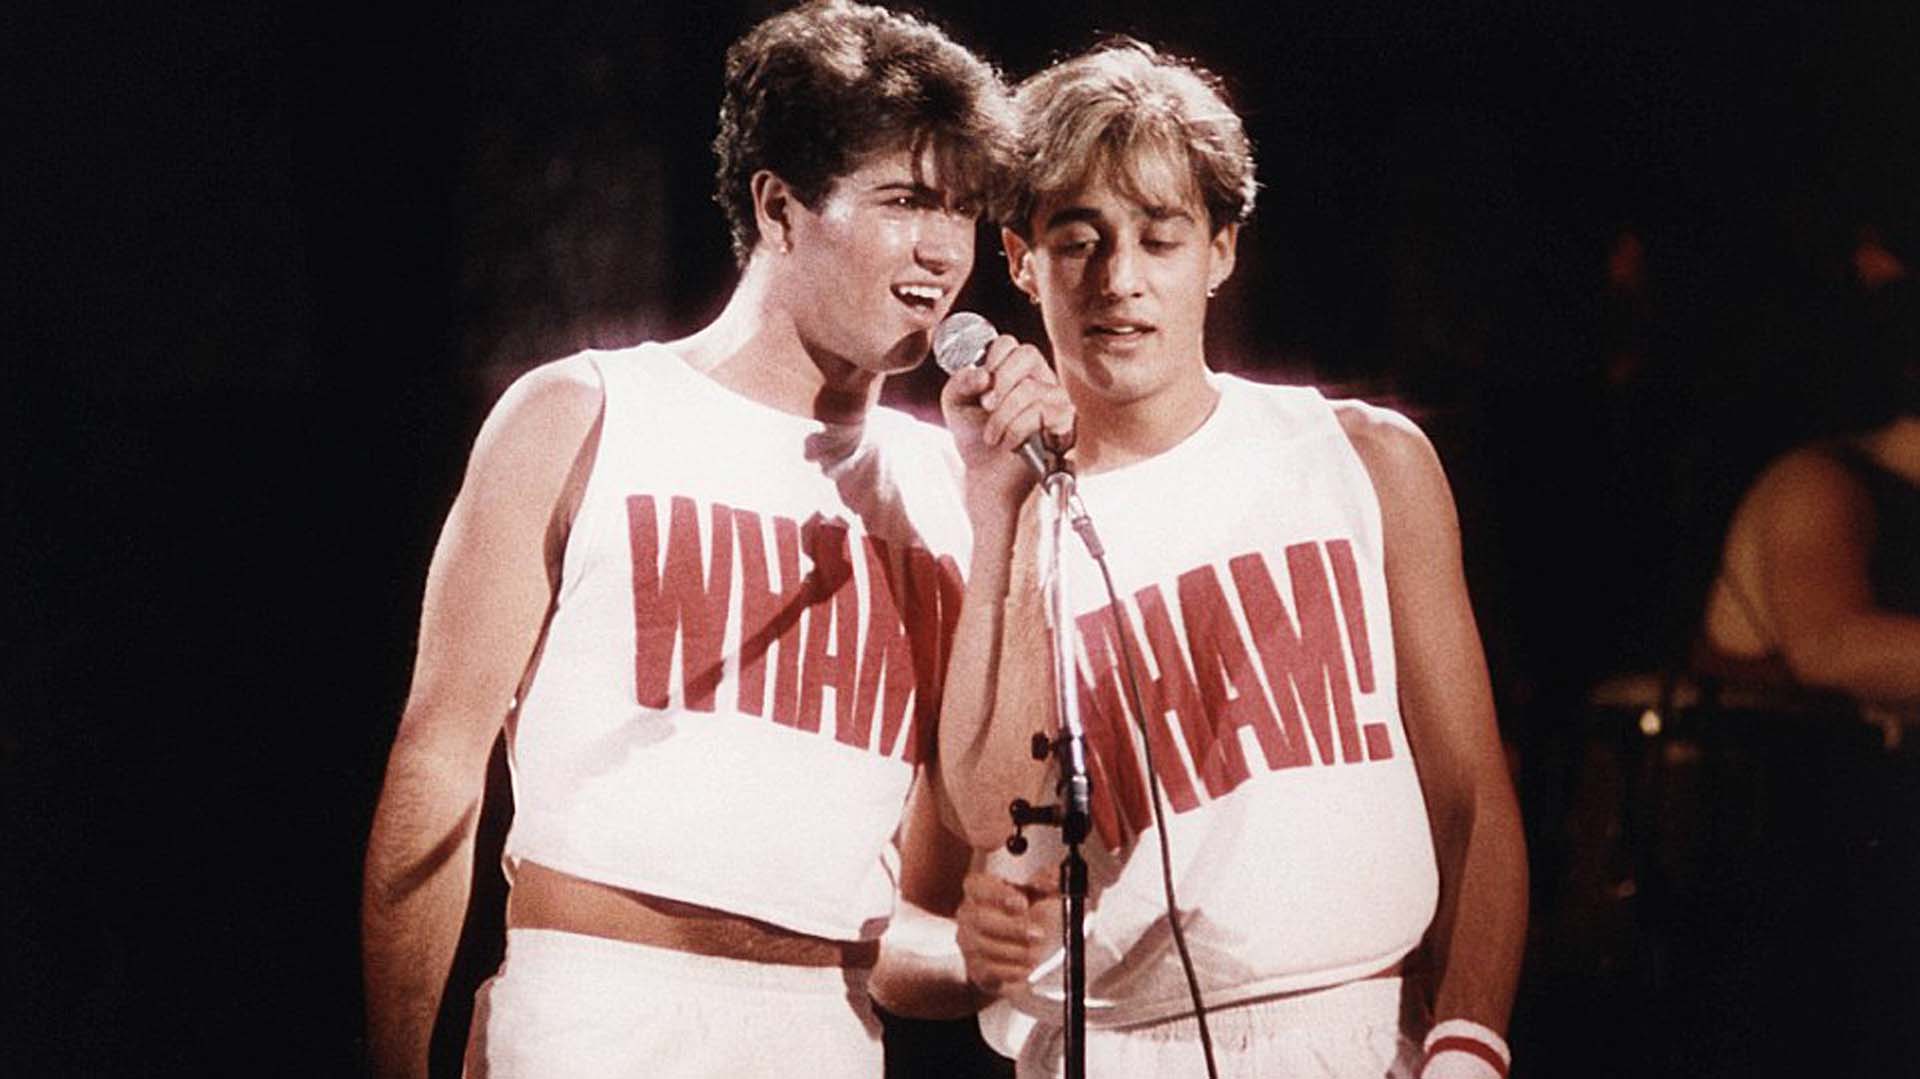 George Michael en Wham!, el dúo que lo lanzó a la fama